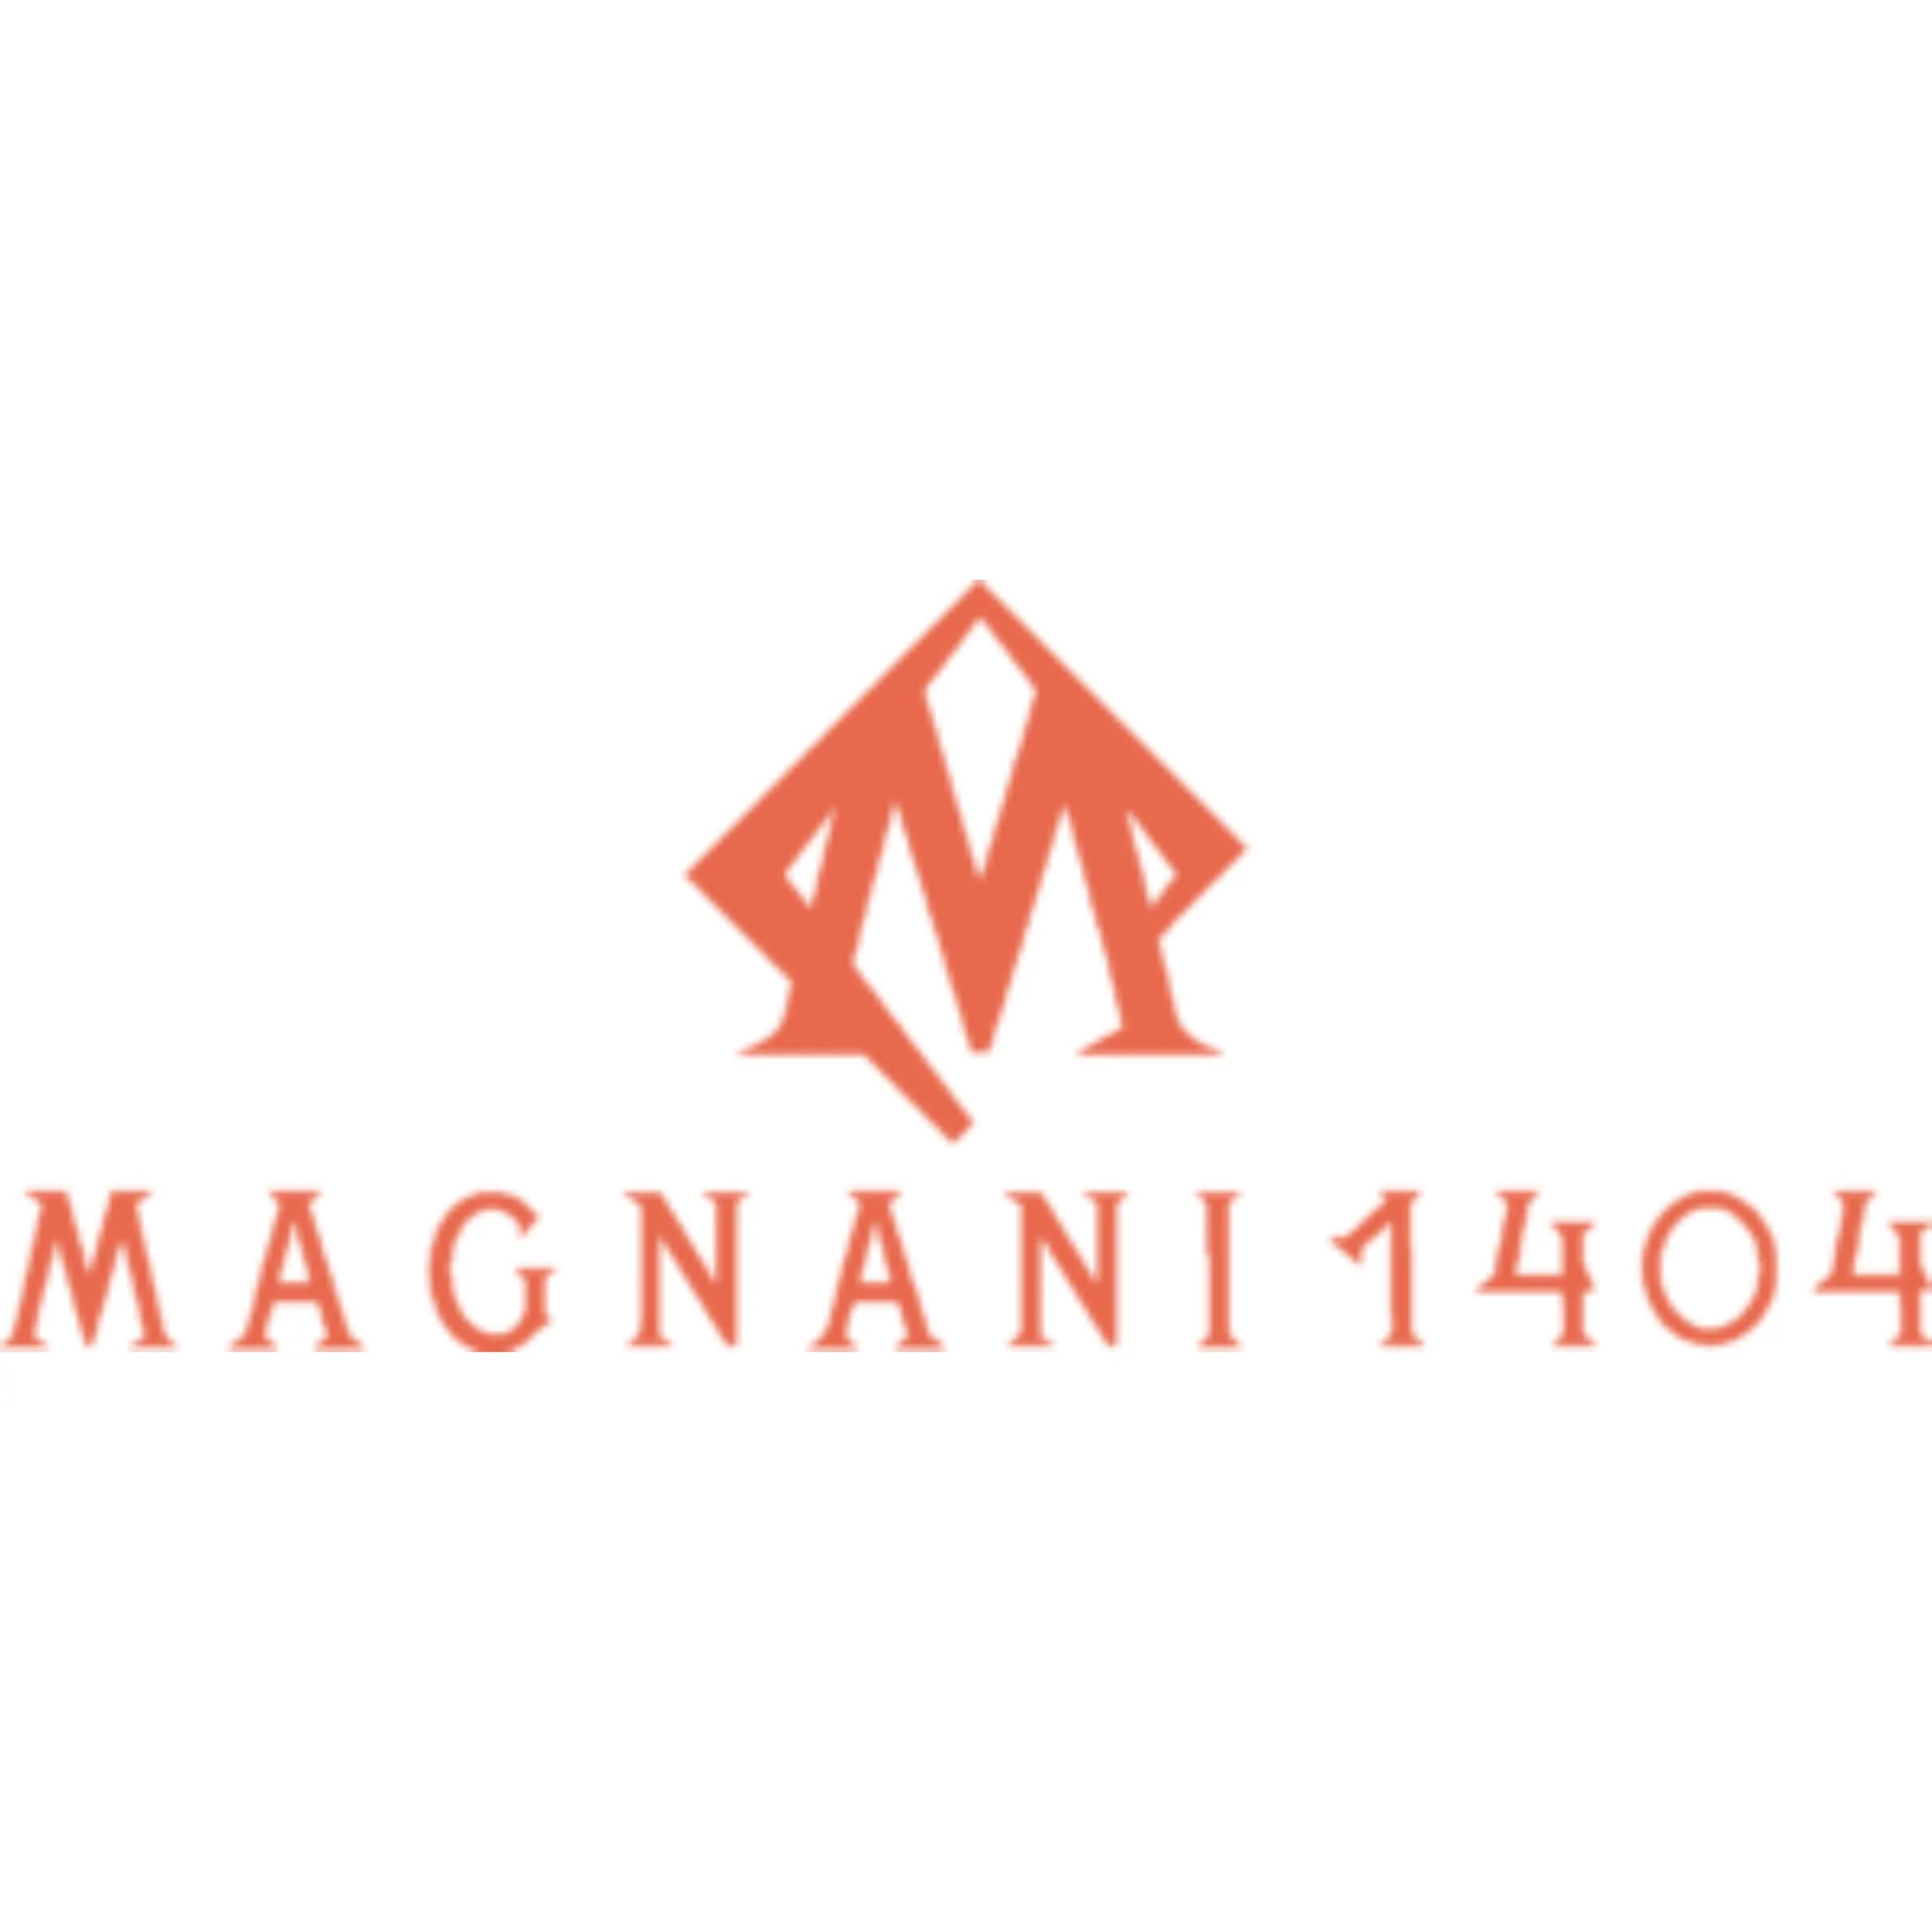 Magnani 1404